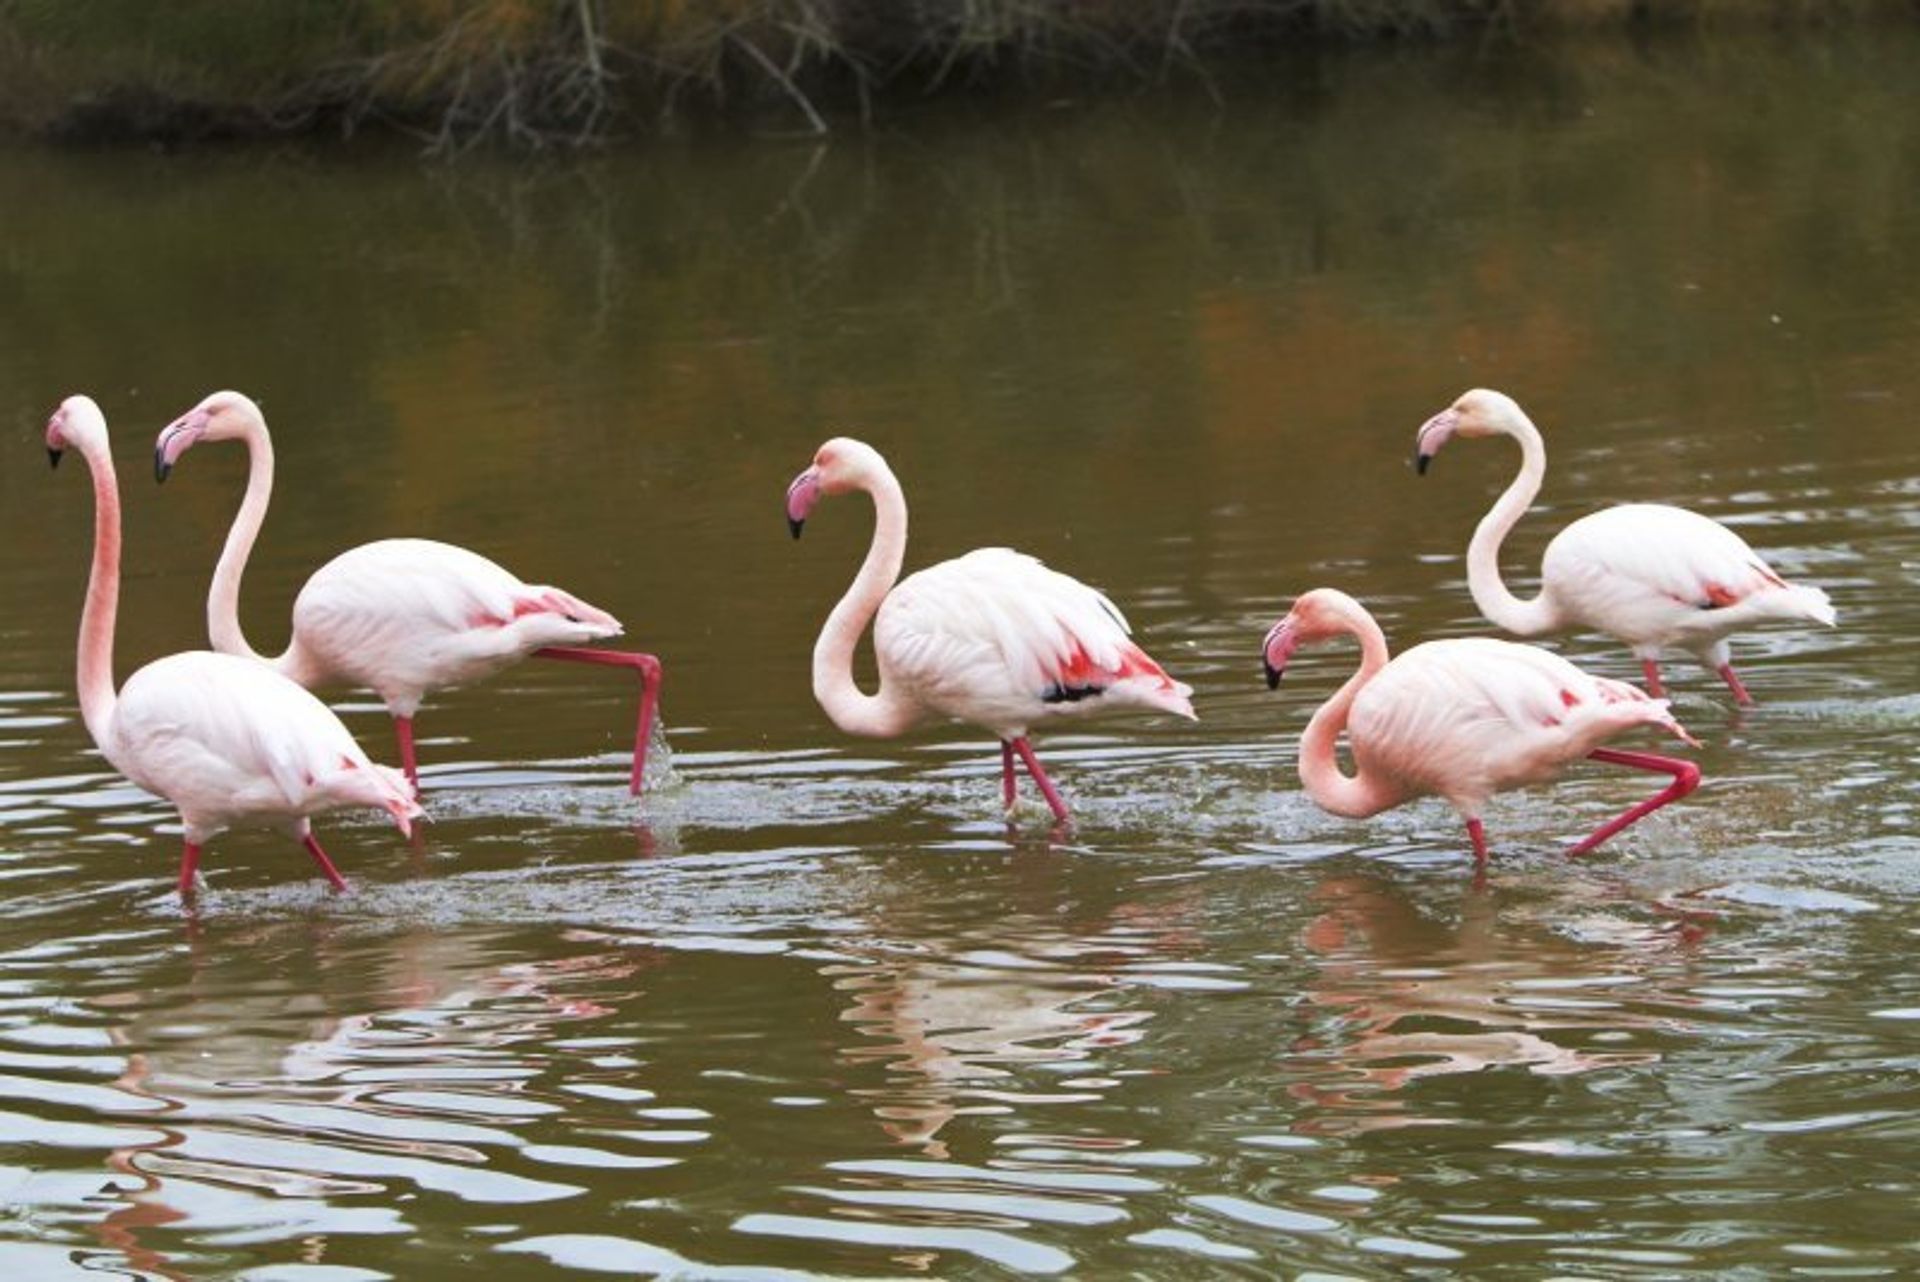 Nature lovers will love watching the flamingos strut around neighbouring Bioparc Fuengirola